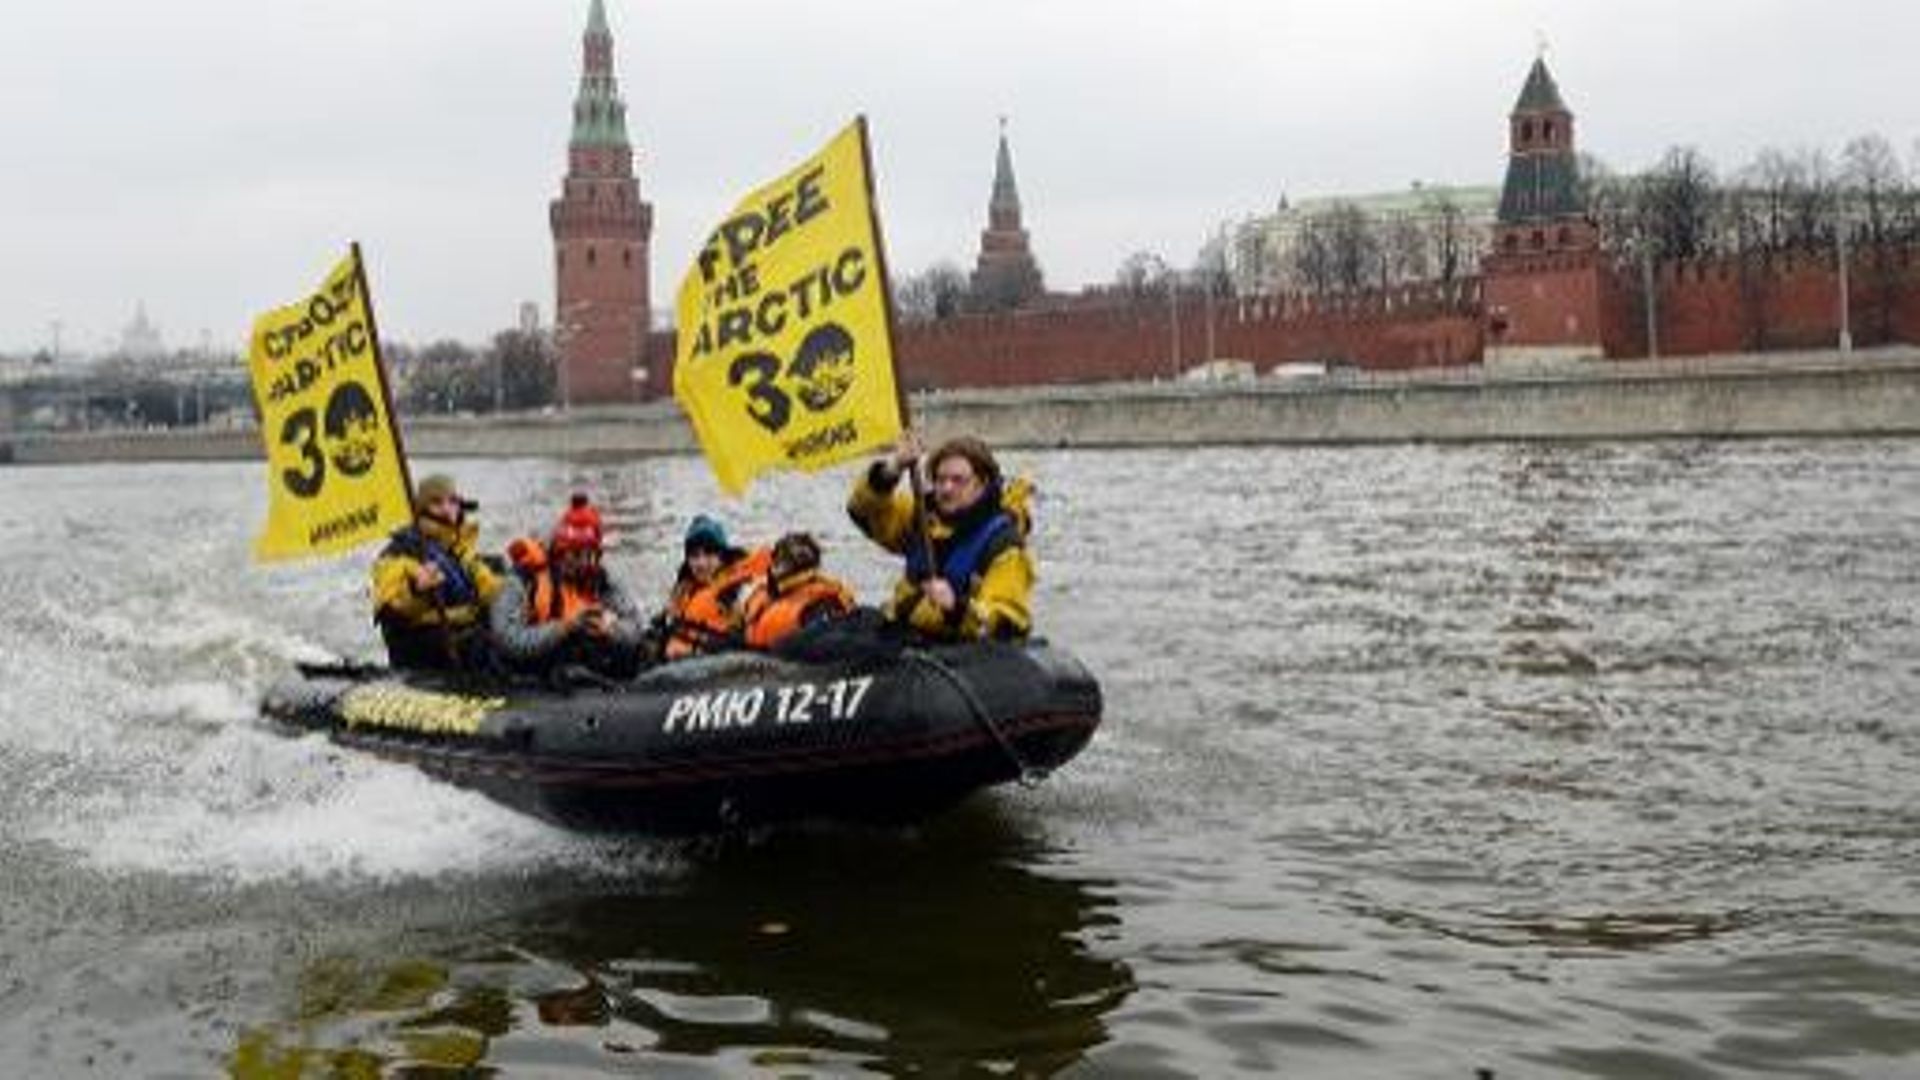 Des militants de Greenpeace demandent la liberté pour leurs camarades détenus à Moscou, le 6 novembre 2013